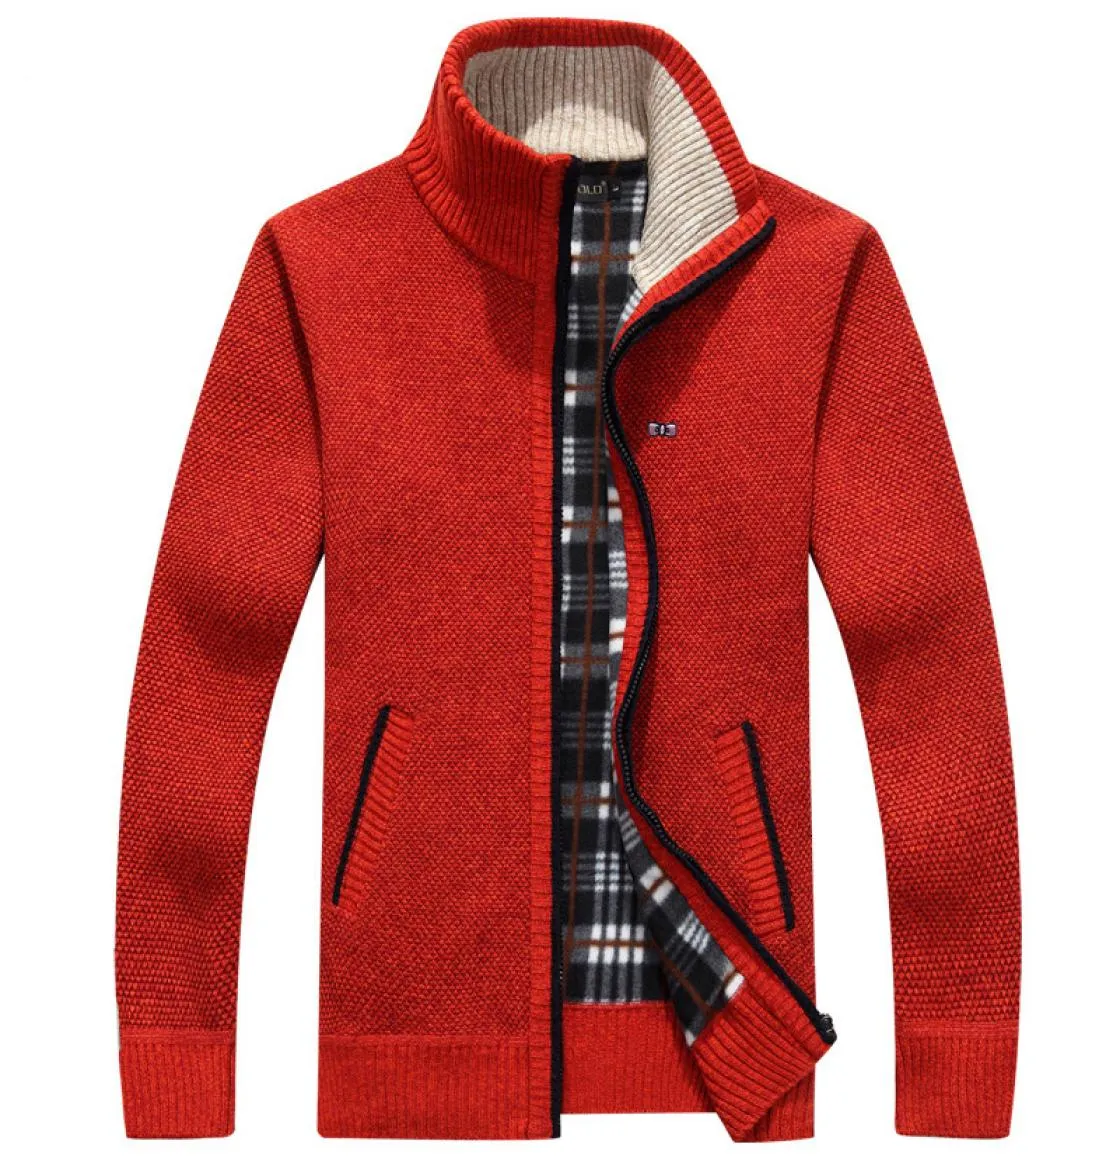 2020 Winter Jacket Park Men Soft Shell Fleece Warm Red Men Capper Windbreaker Black Eden Plus Size M3XL CATS MAL C10015569511